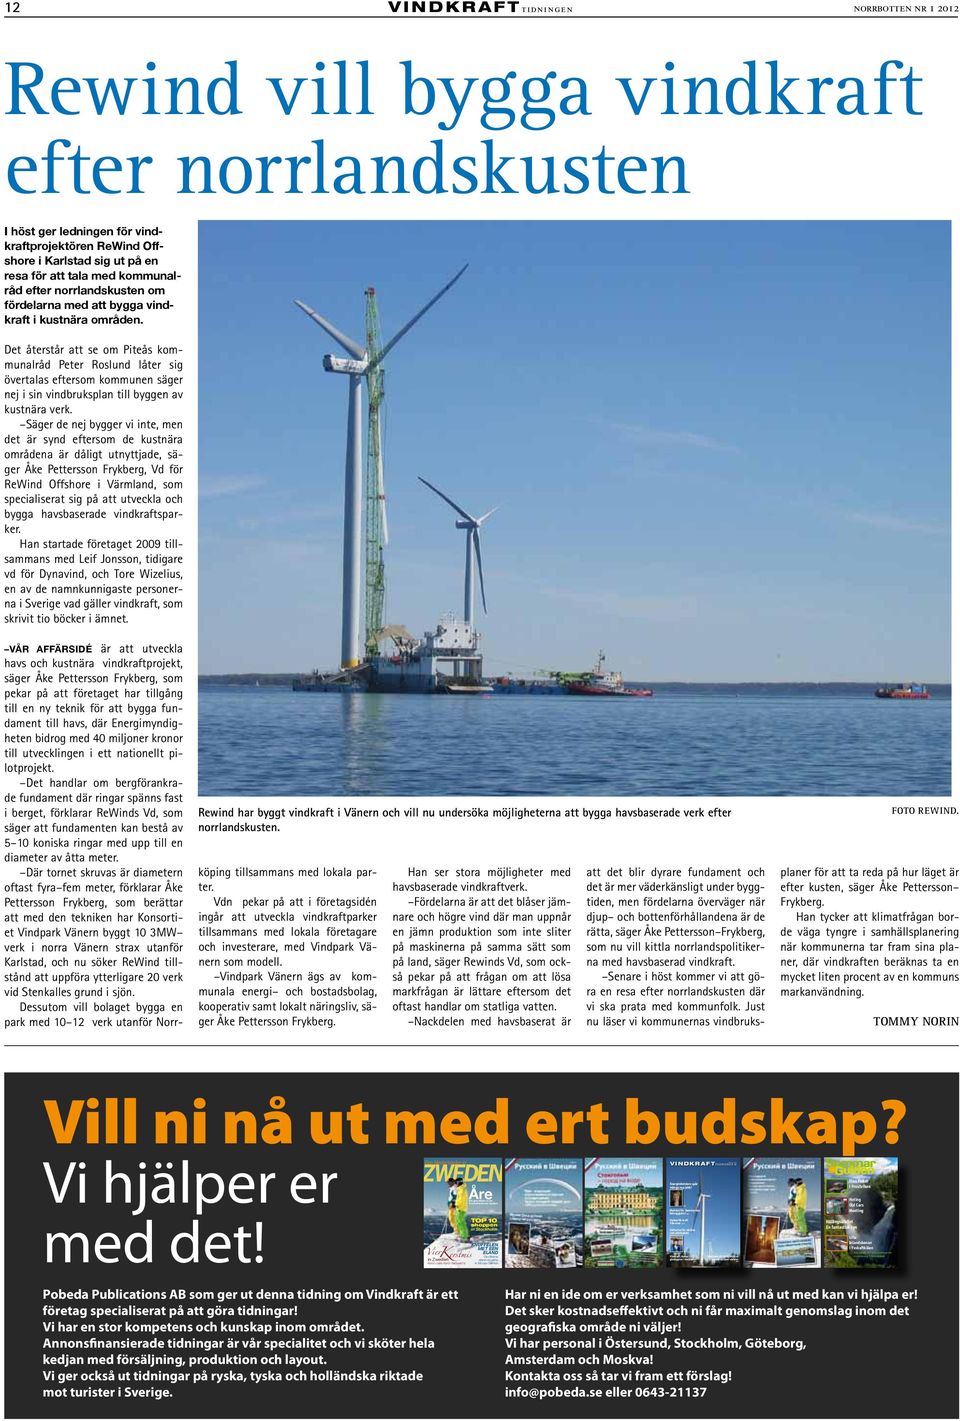 Det återstår att se om Piteås kommunalråd Peter Roslund låter sig övertalas eftersom kommunen säger nej i sin vindbruksplan till byggen av kustnära verk.